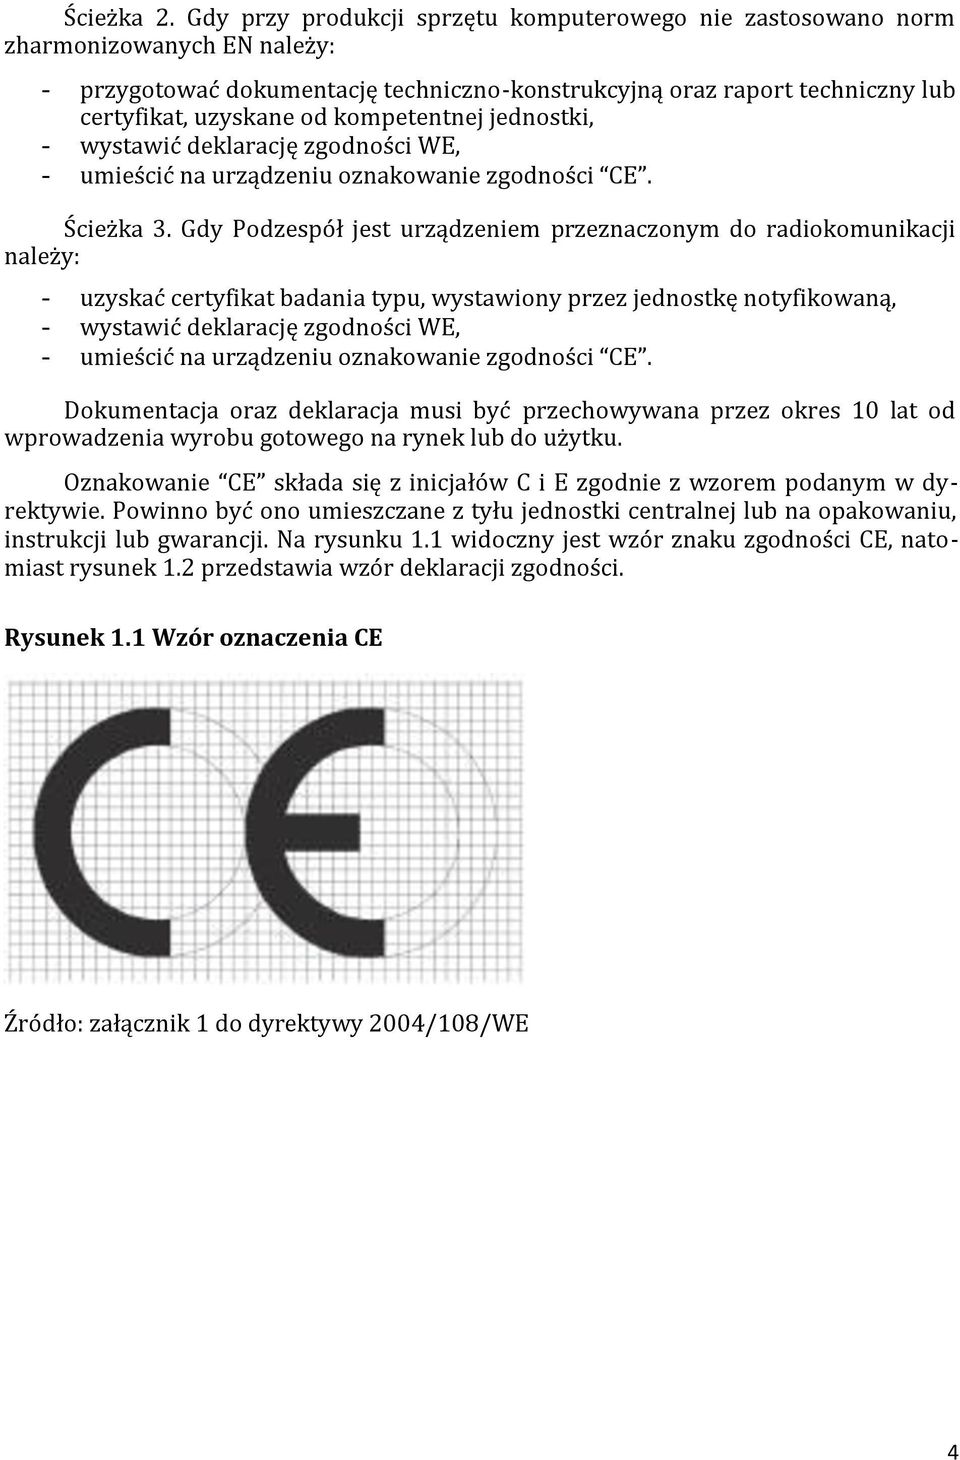 Moduł 1. Certyfikacja CE i recycling systemów komputerowych - PDF Free  Download